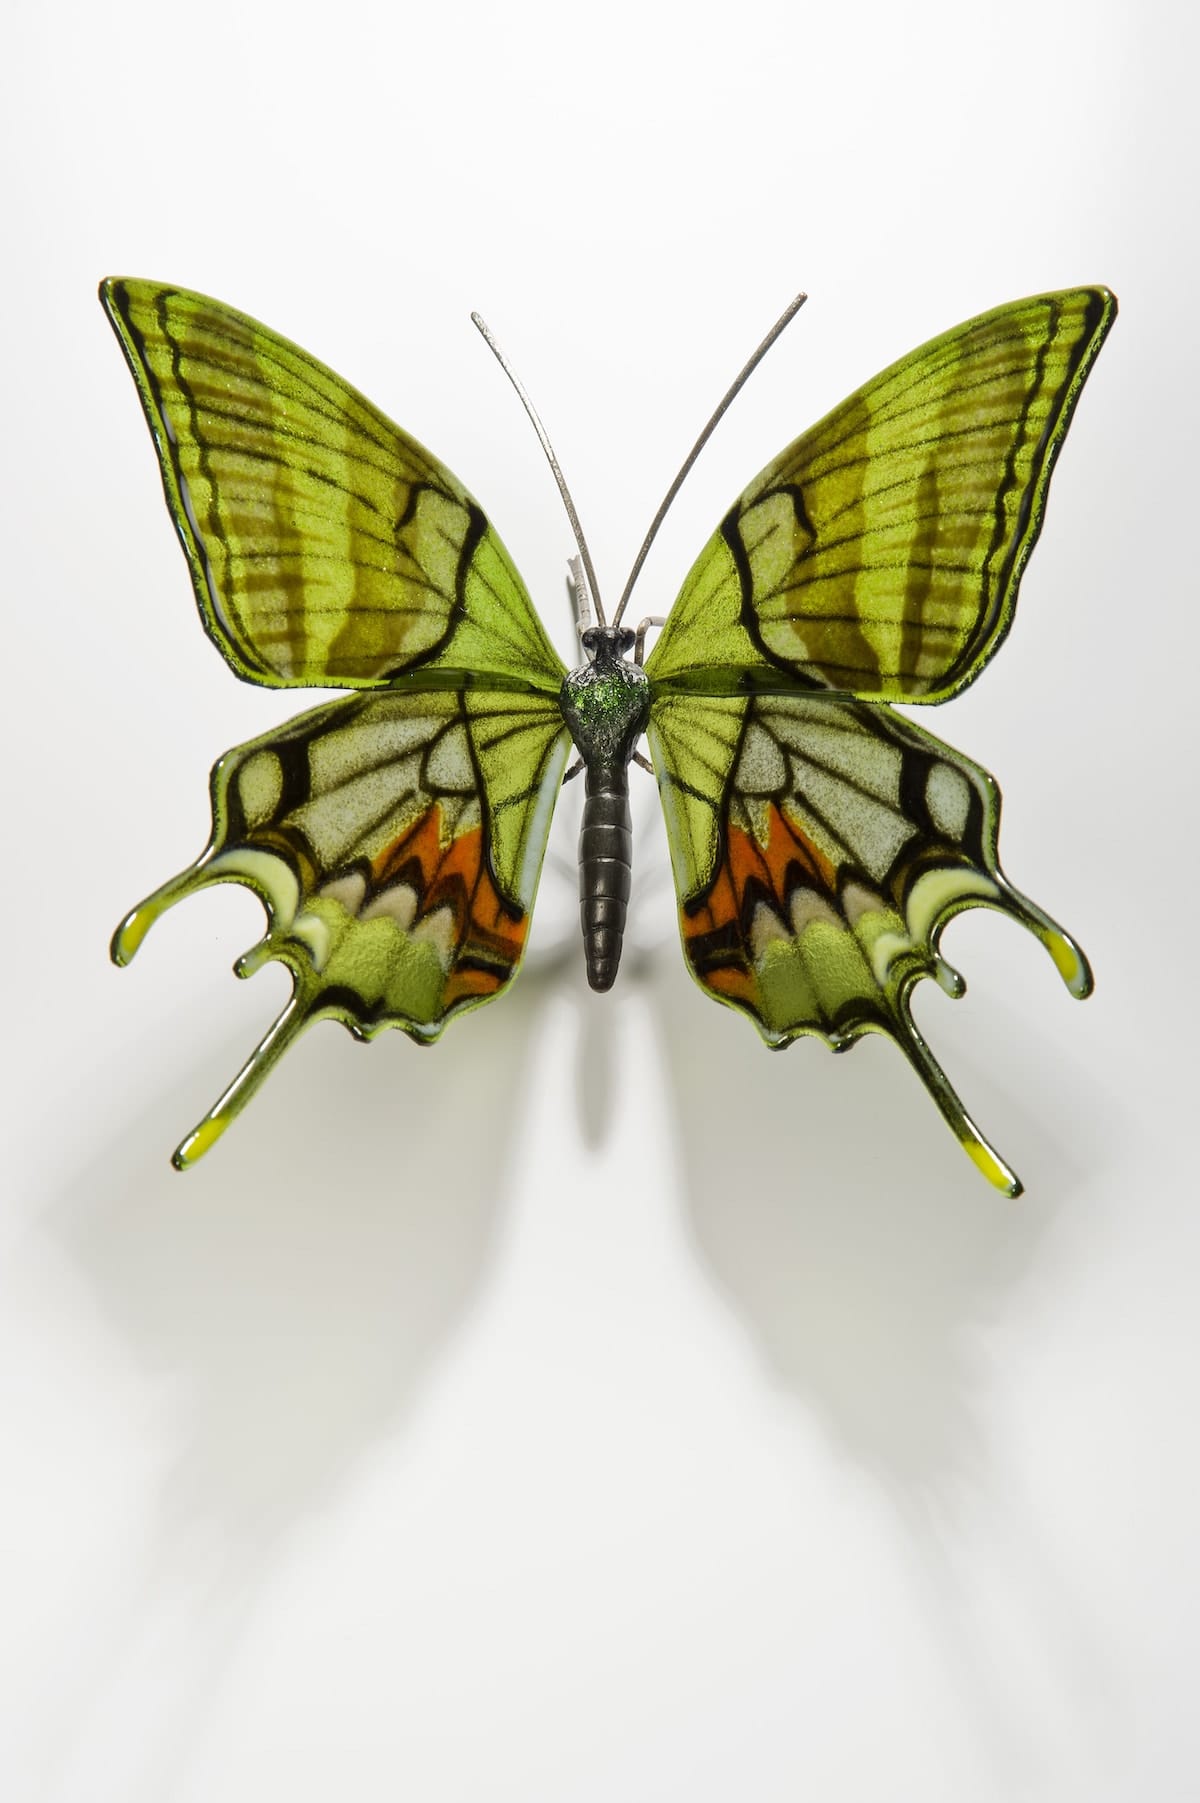 Sculpture of an Endangered Butterfly by Laura Hart